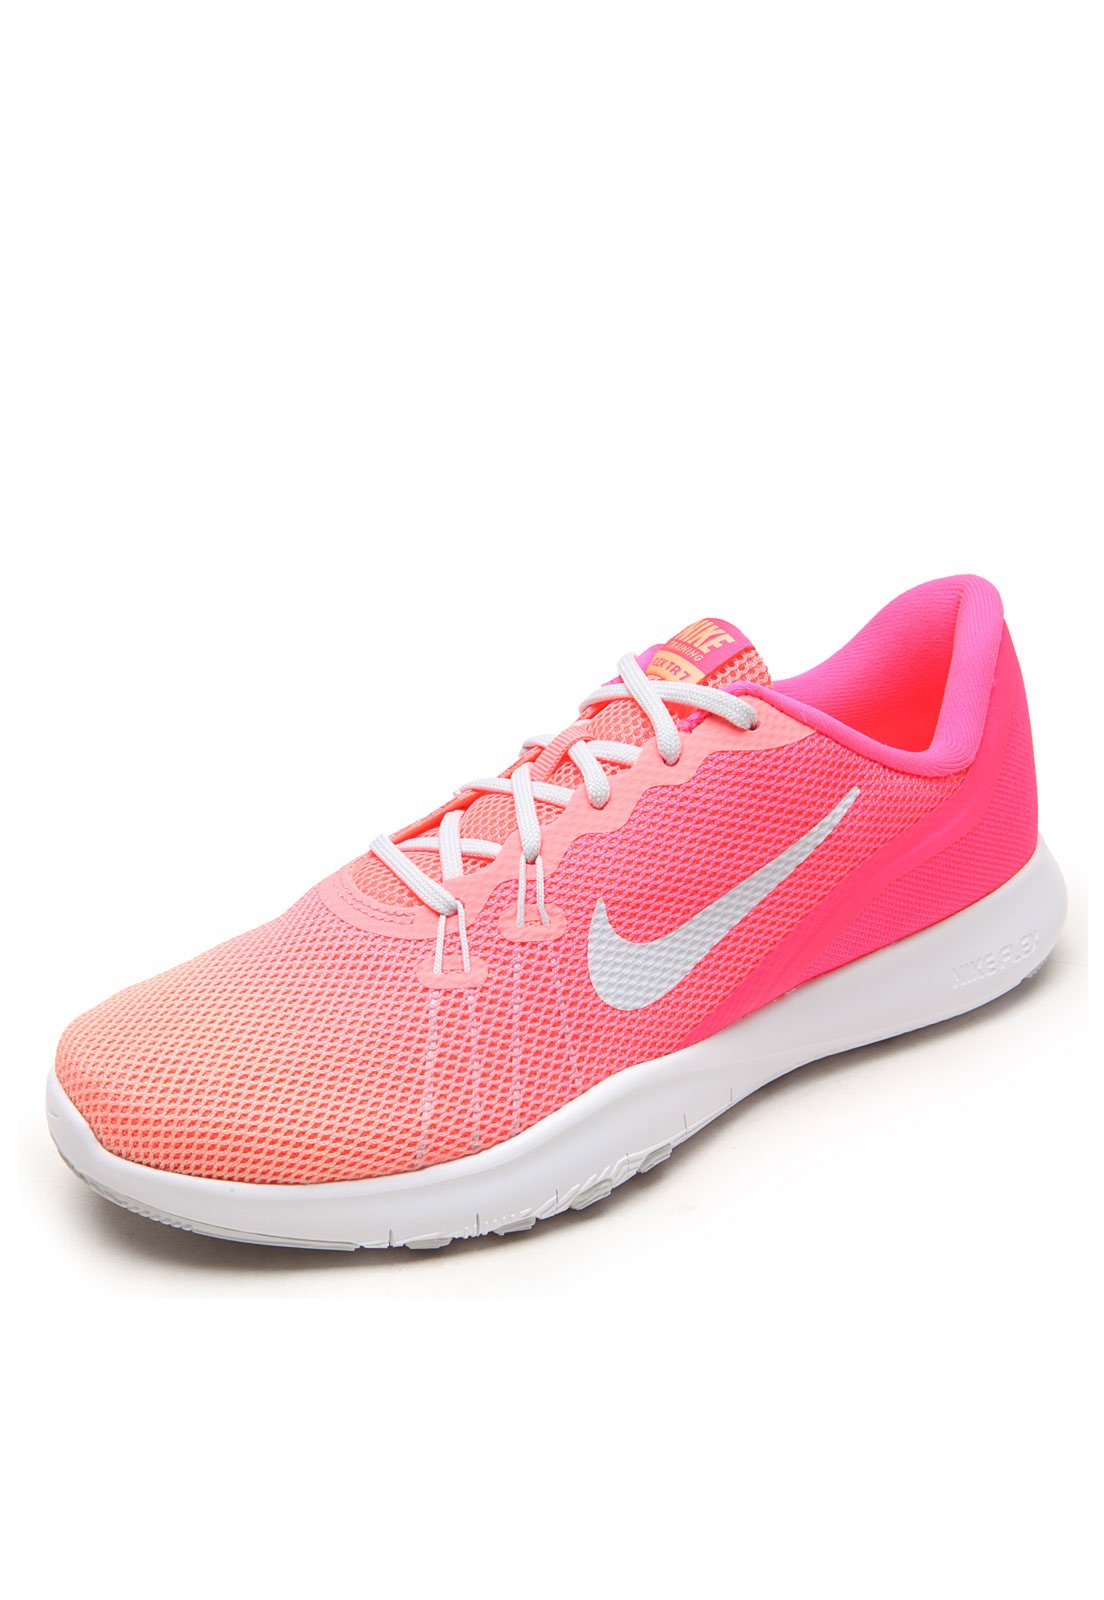 tênis nike flex trainer 7 feminino rosa